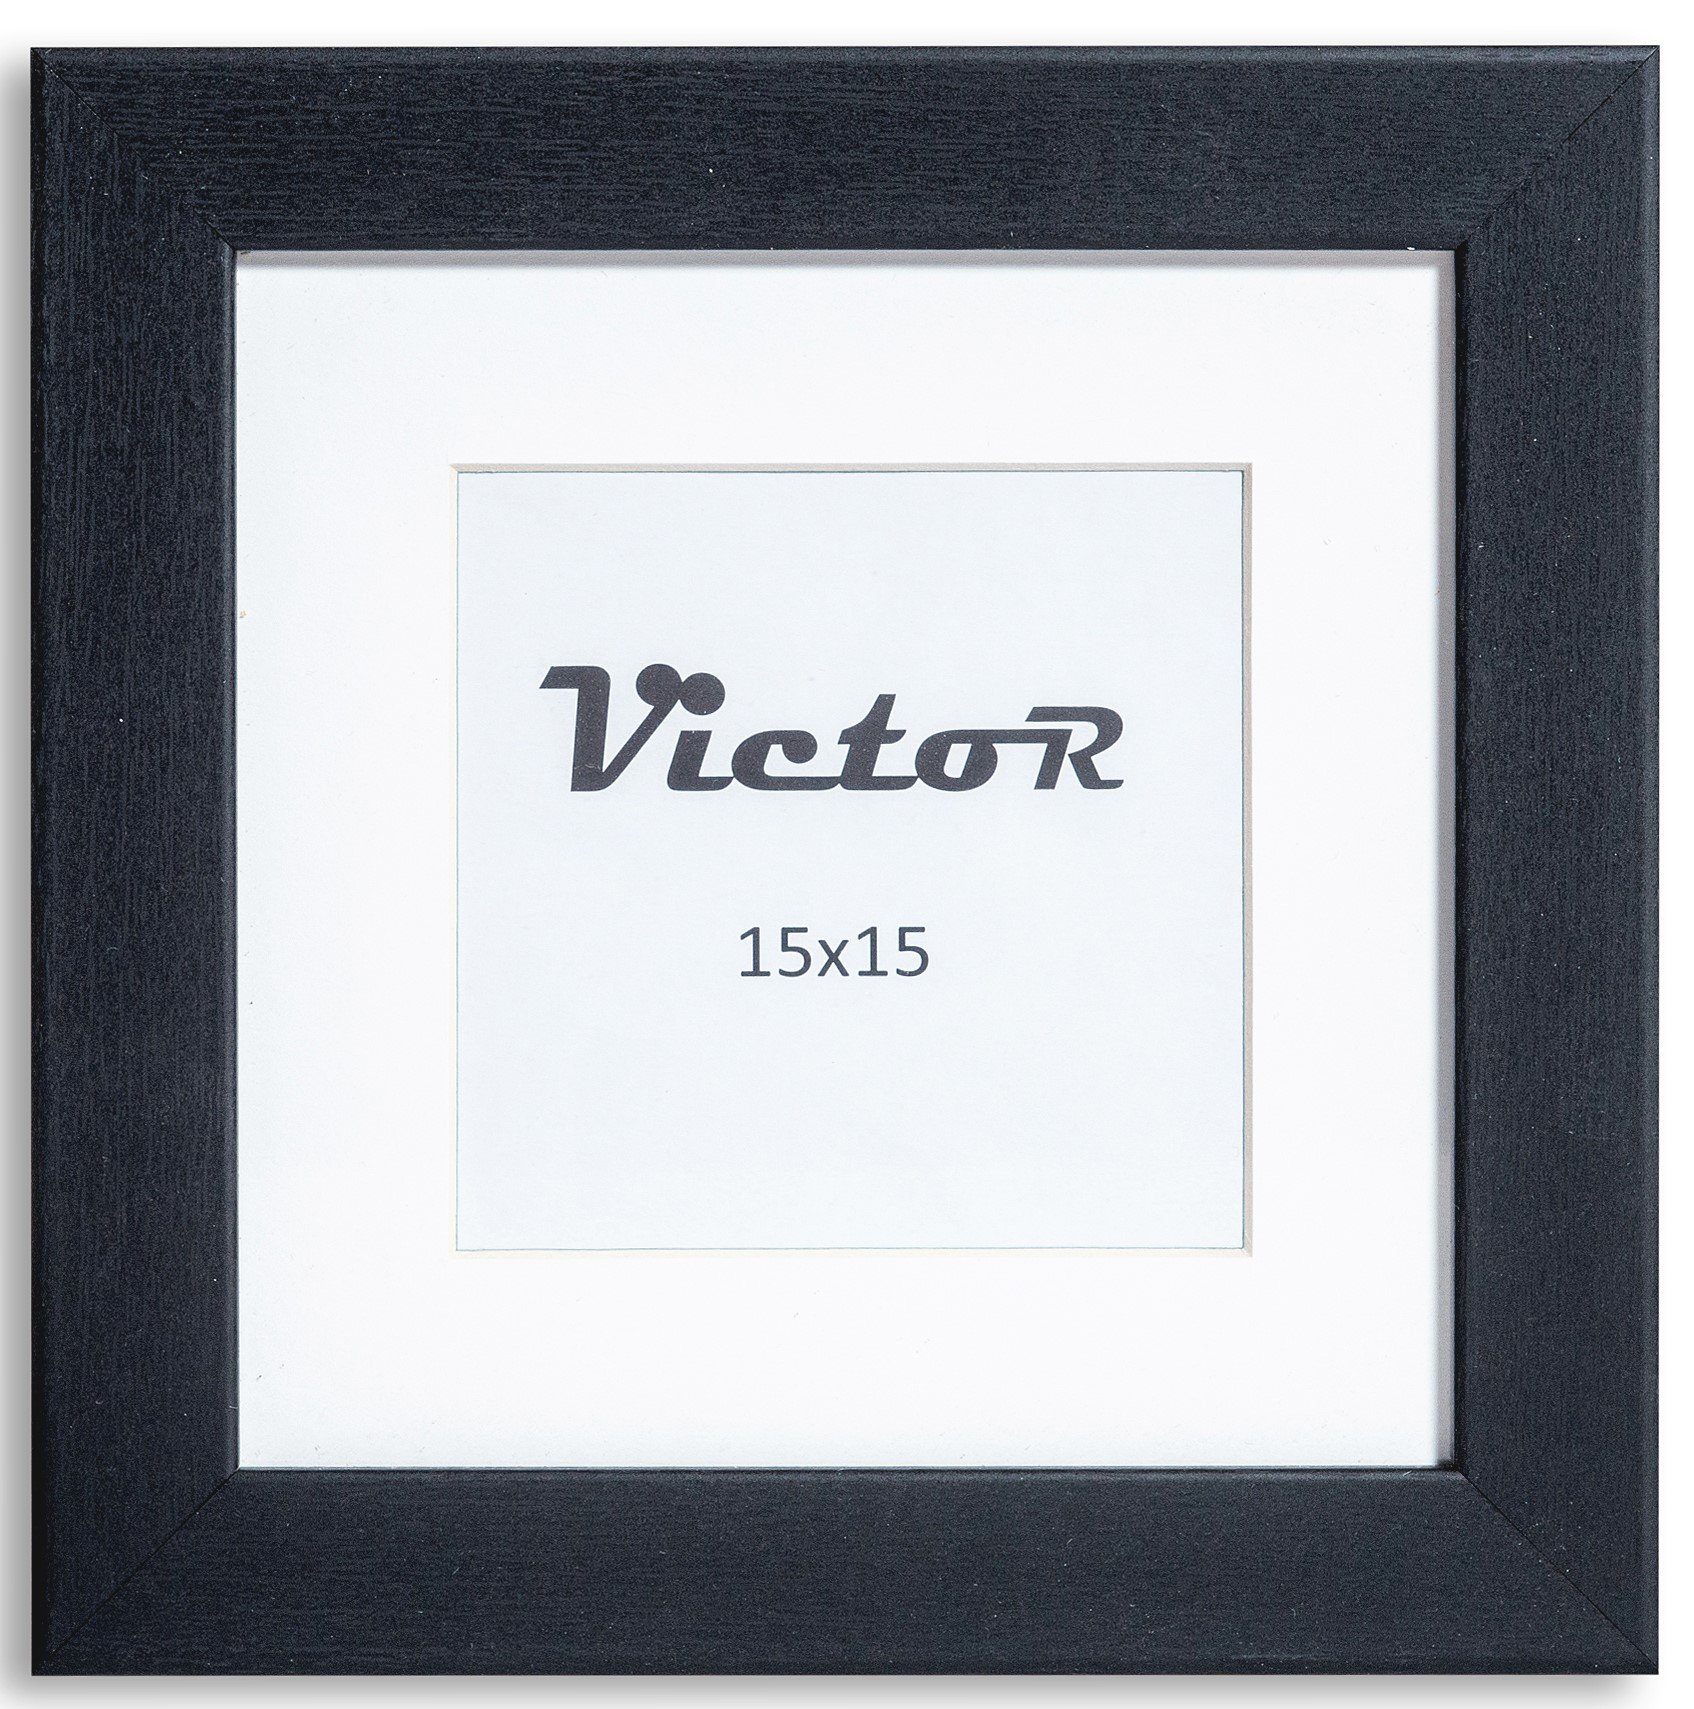 Victor (Zenith) Bilderrahmen Richter, Bilderrahmen Schwarz 15x15 cm mit 10x10 cm Passepartout, Holz | Einzelrahmen